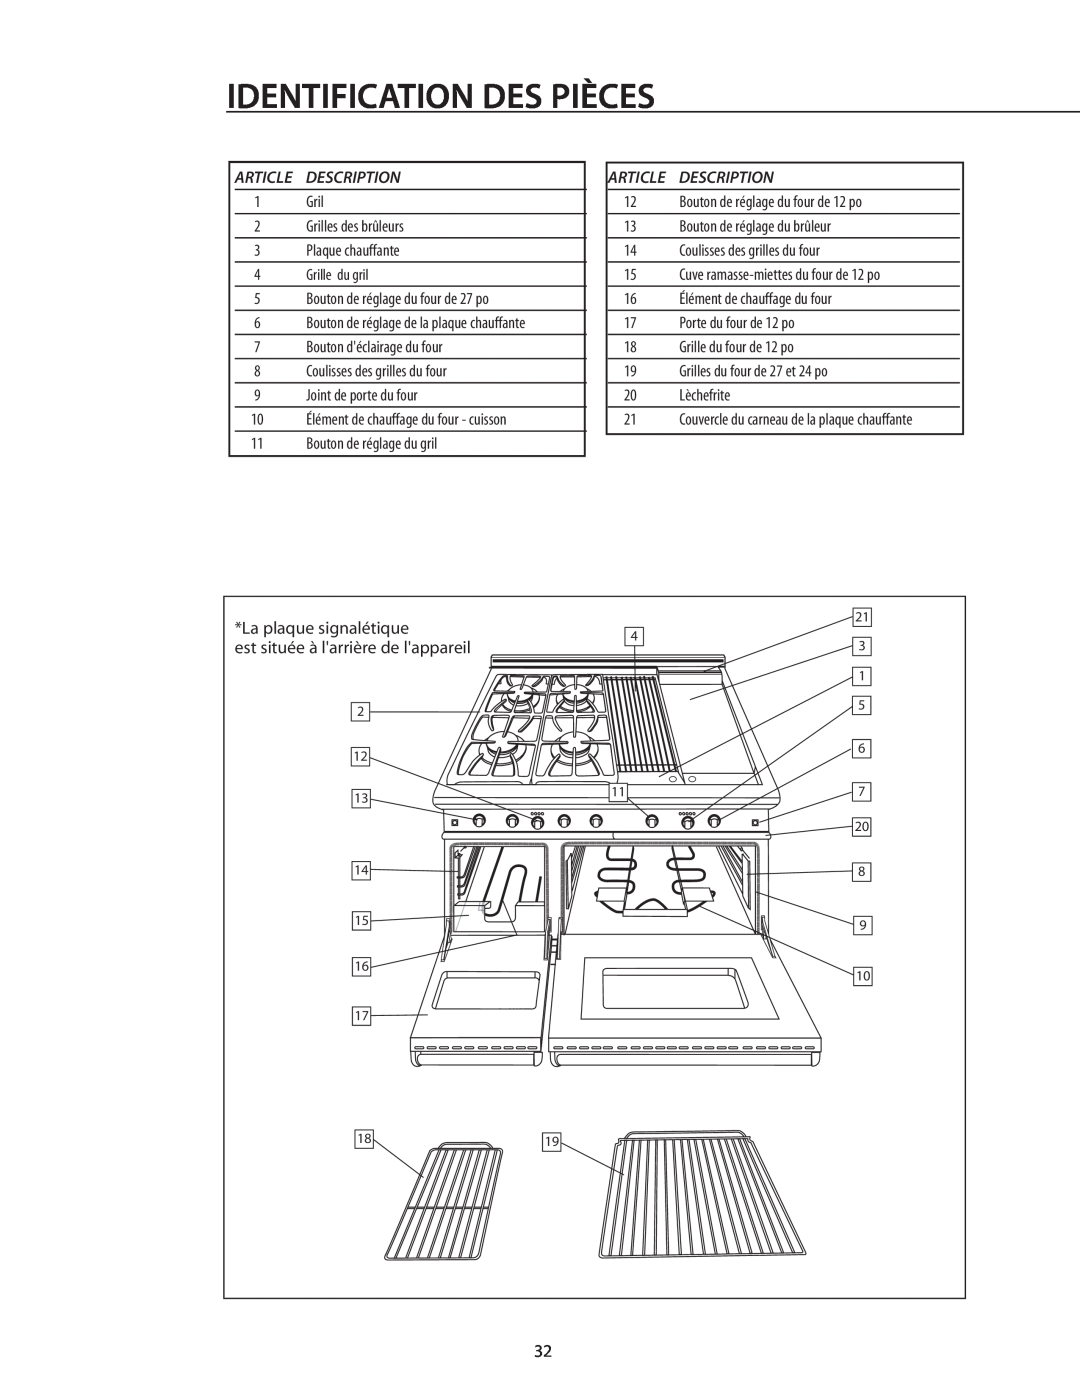 DCS RDS-305 manual Identification Des Pièces, Description, Bouton de réglage du four de 12 po, Grilles des brûleurs 